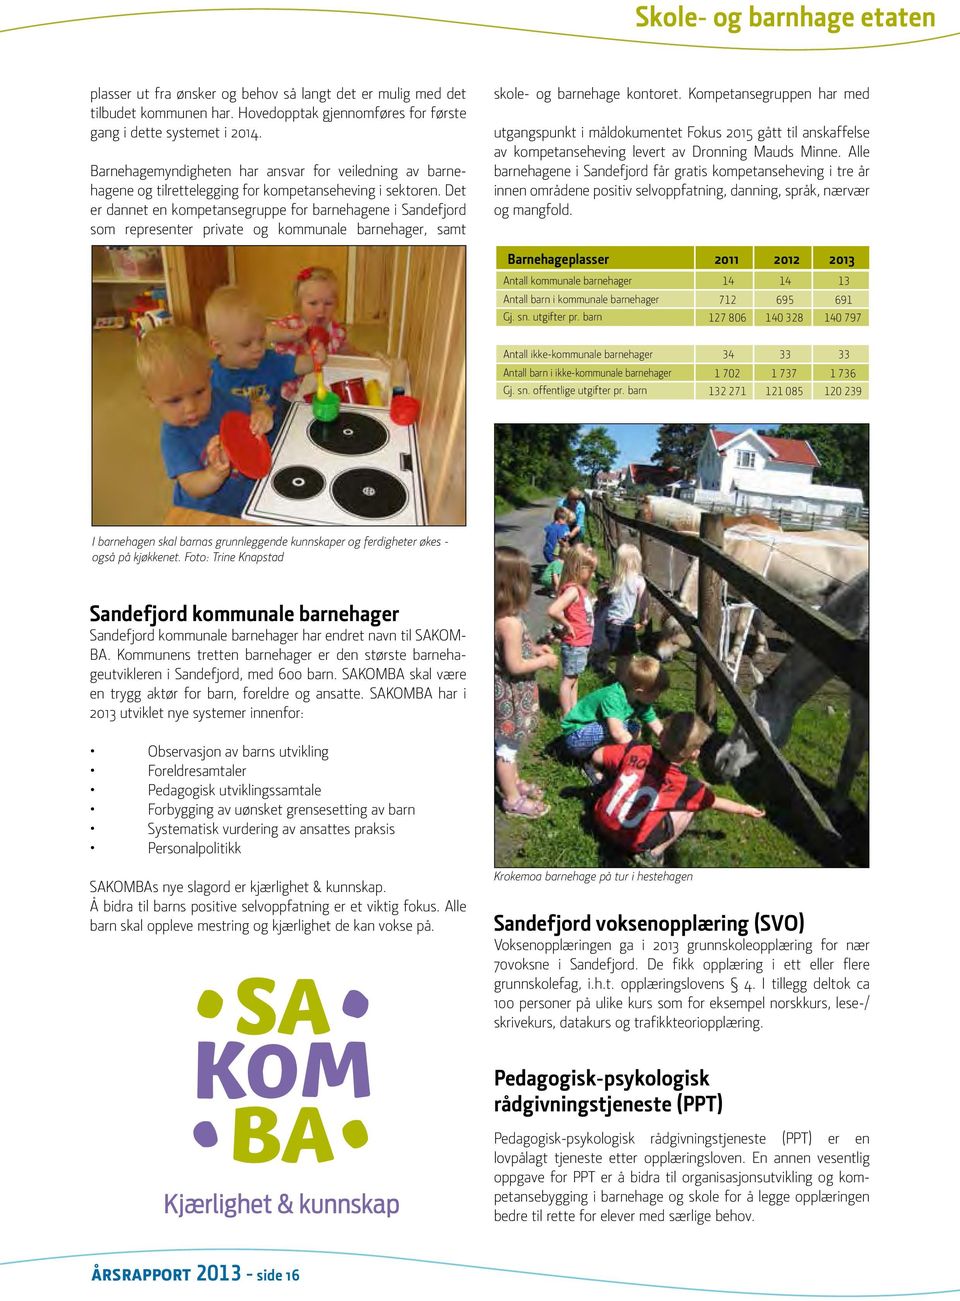 Det er dannet en kompetansegruppe for barnehagene i Sandefjord som representer private og kommunale barnehager, samt skole- og barnehage kontoret.